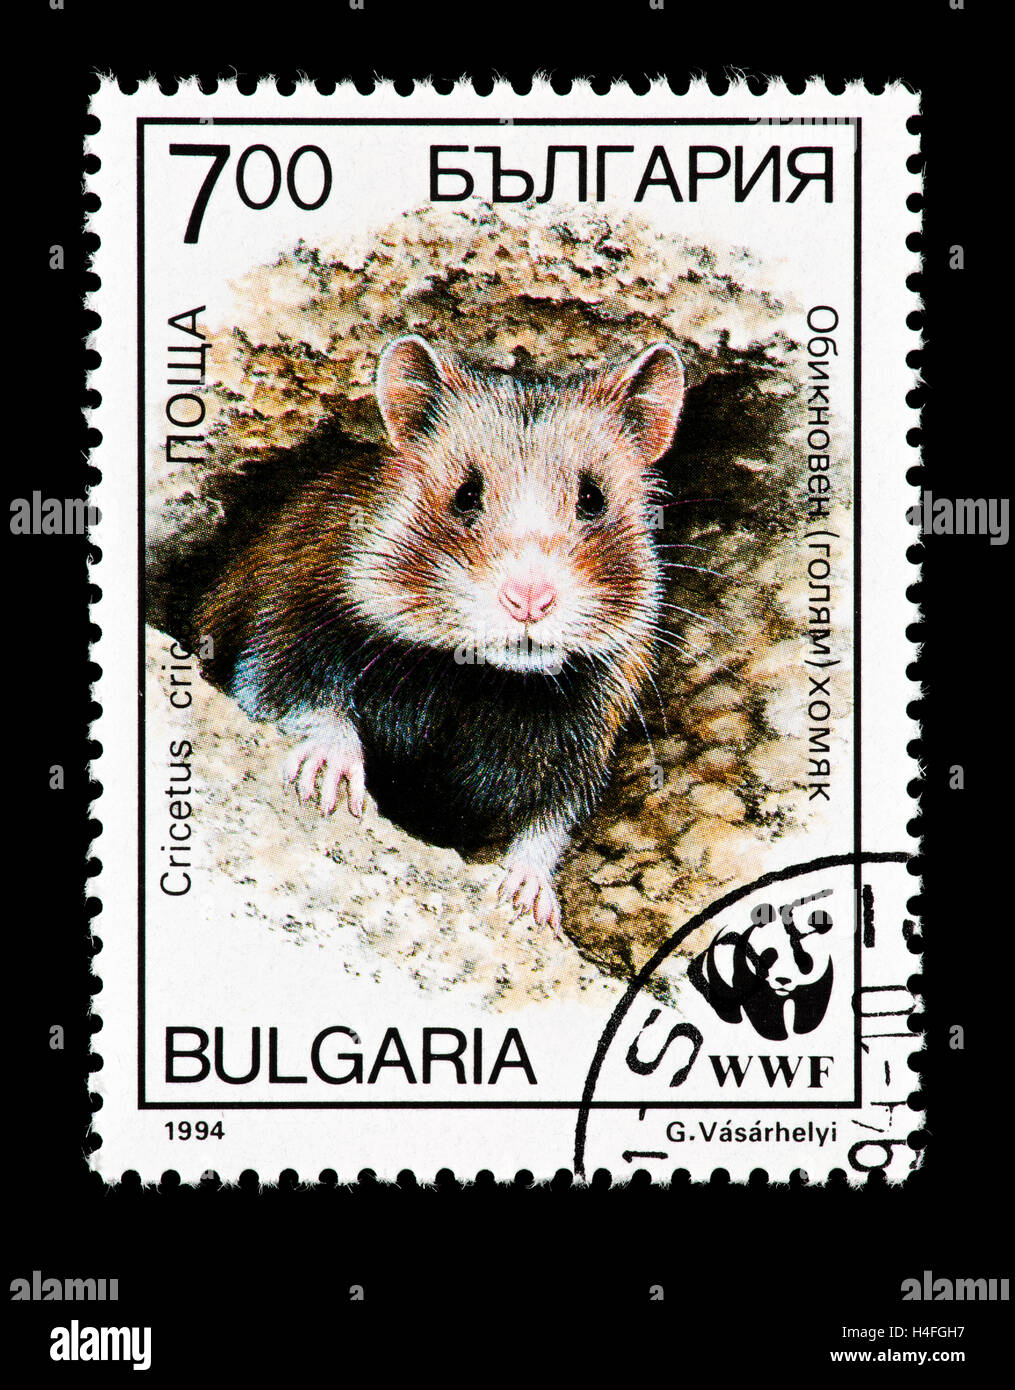 Timbre-poste de la Bulgarie représentant un grand hamster (Cricetus cricetus) scrutant de nid. Banque D'Images